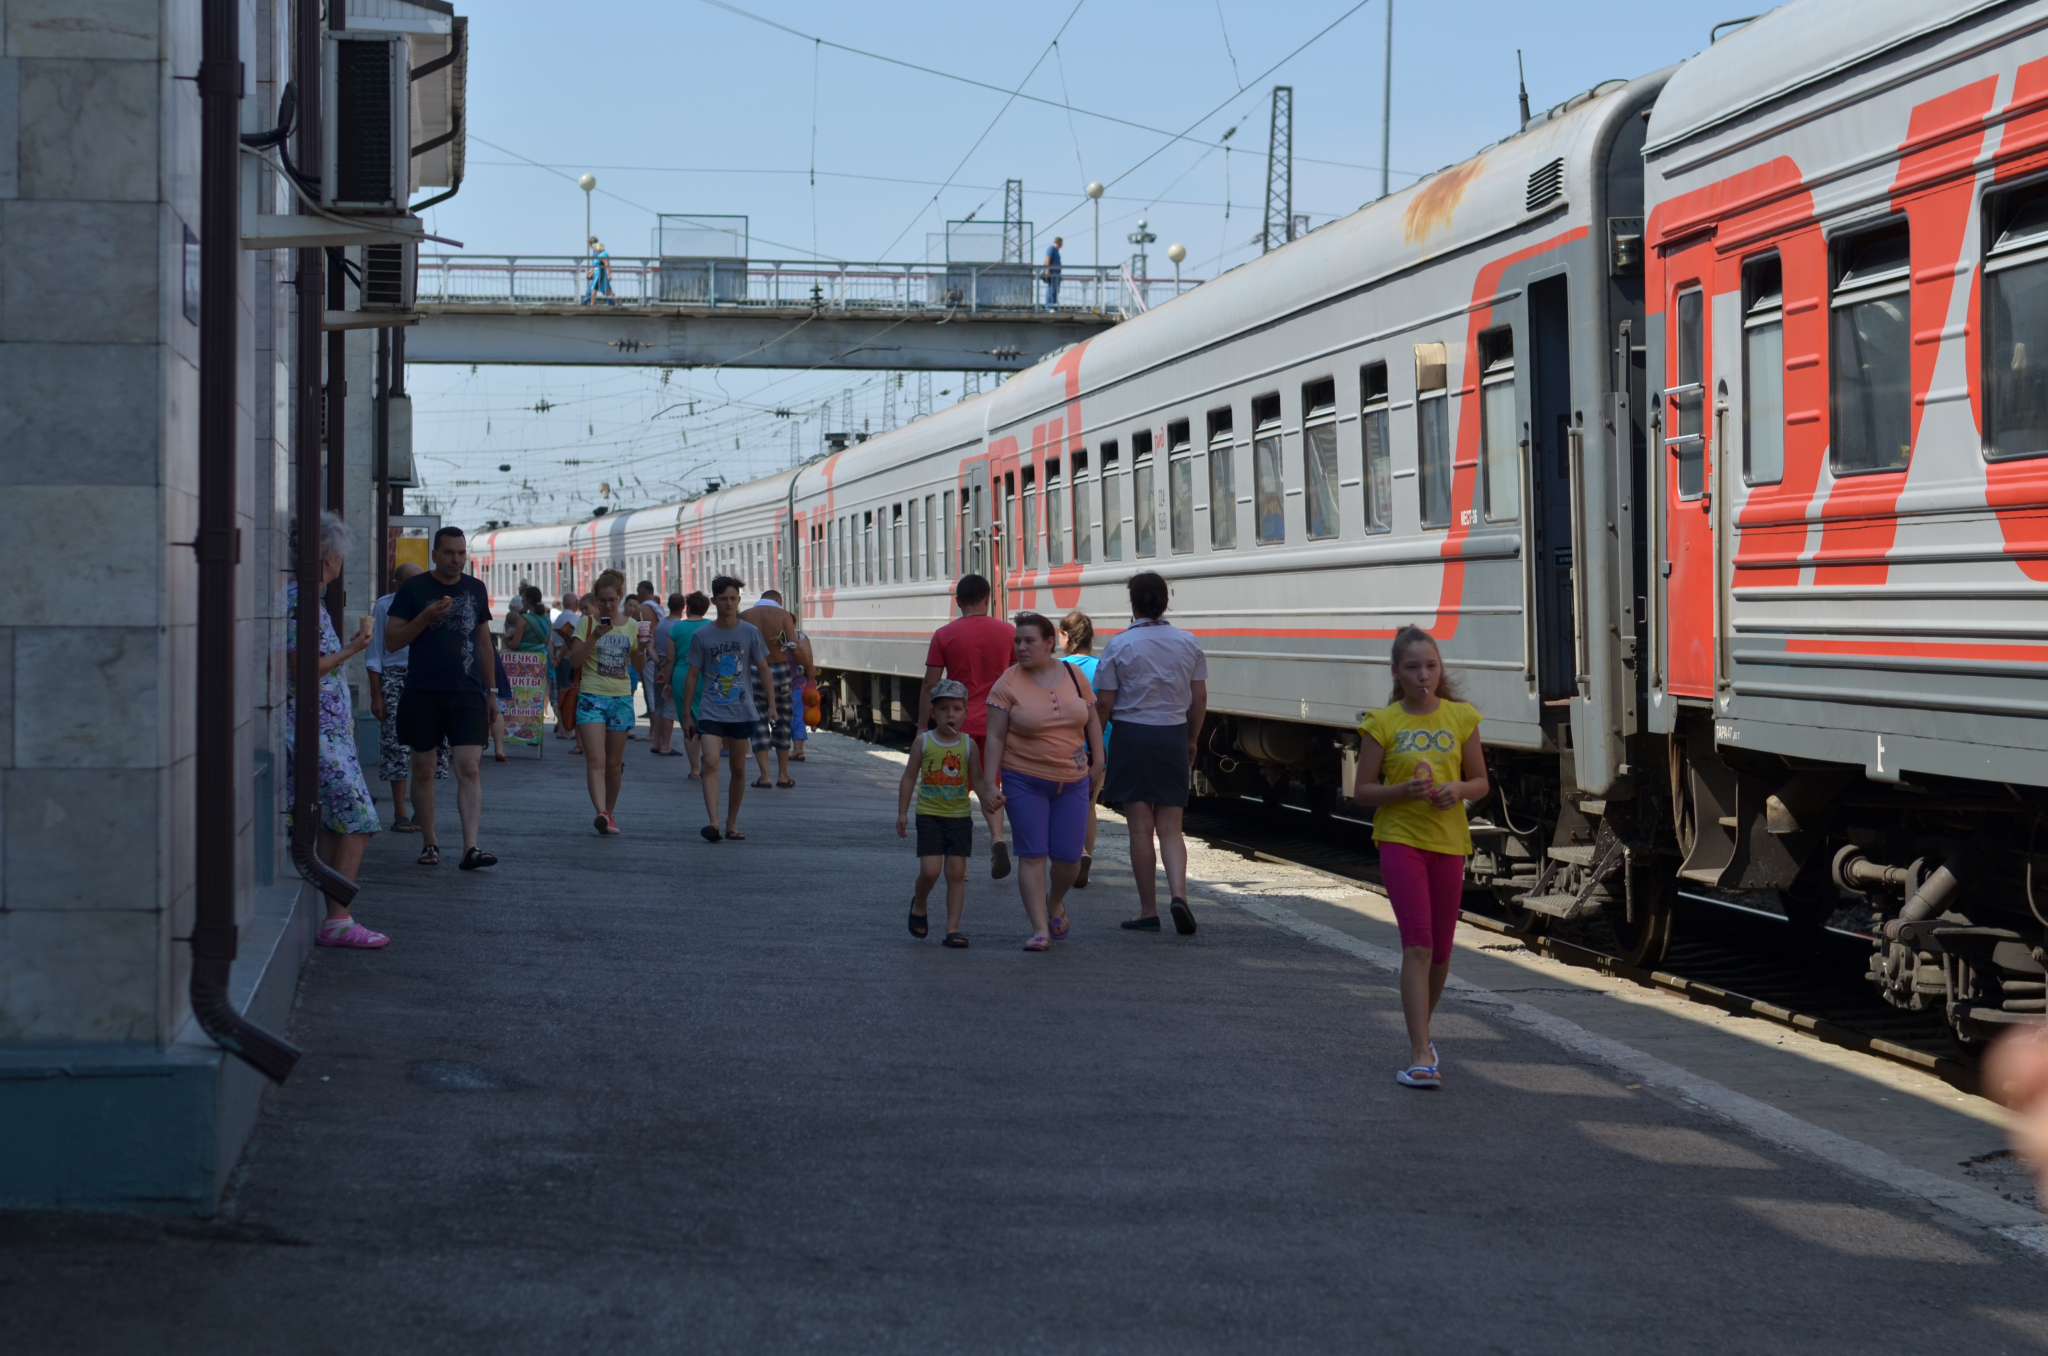 РЖД запустила распродажу билетов со скидкой на поезда до Саранска